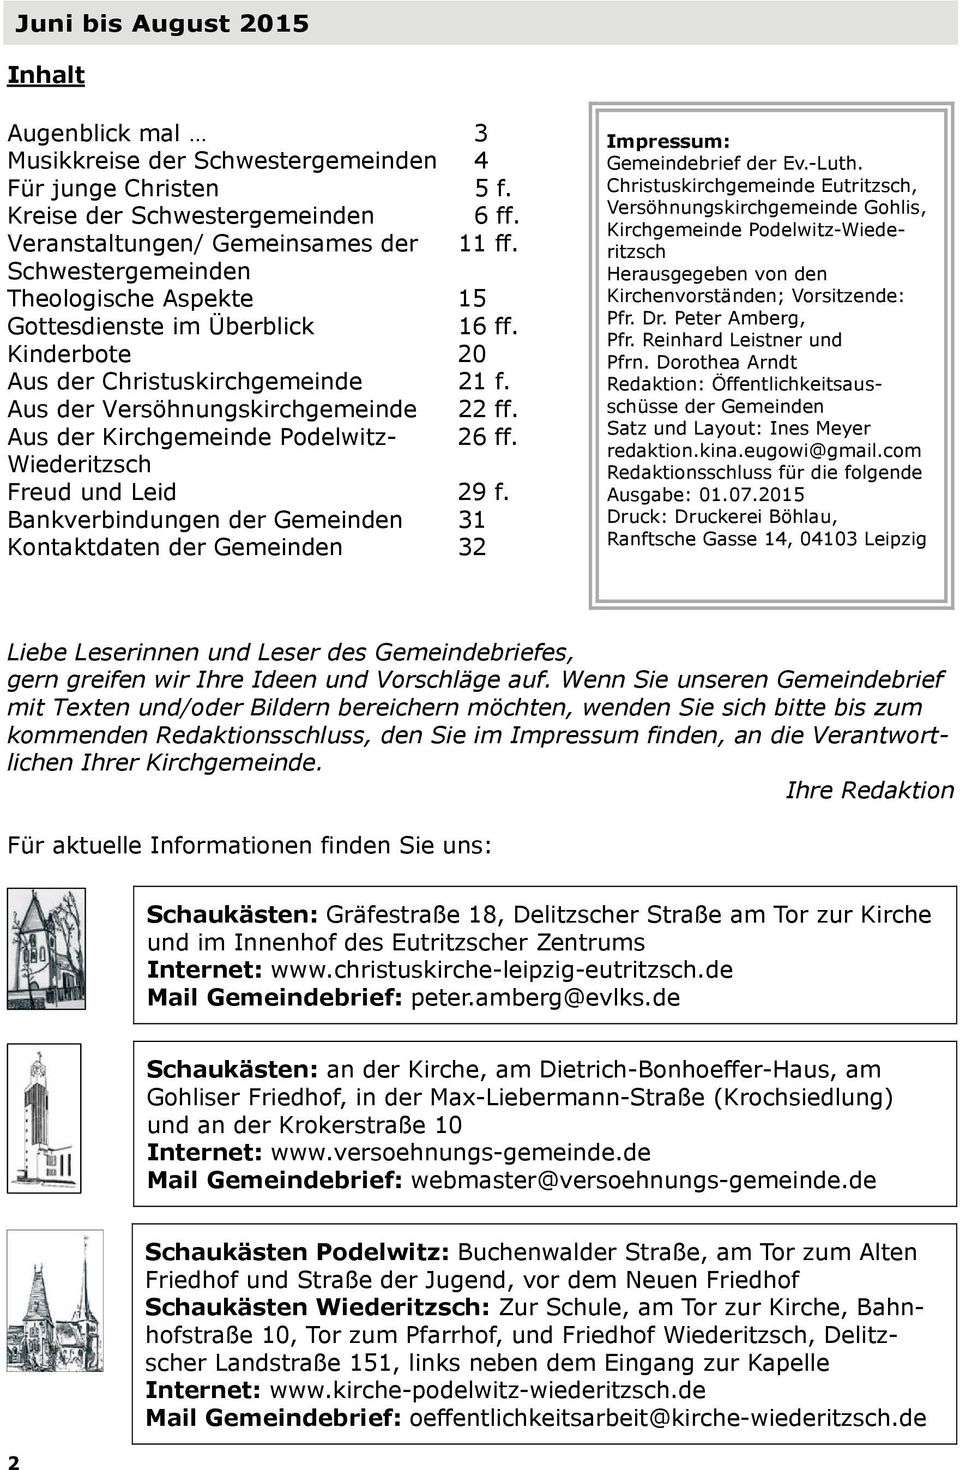 Aus der Kirchgemeinde Podelwitz- 26 ff. Wiederitzsch Freud und Leid 29 f. Bankverbindungen der Gemeinden 31 Kontaktdaten der Gemeinden 32 Impressum: Gemeindebrief der Ev.-Luth.